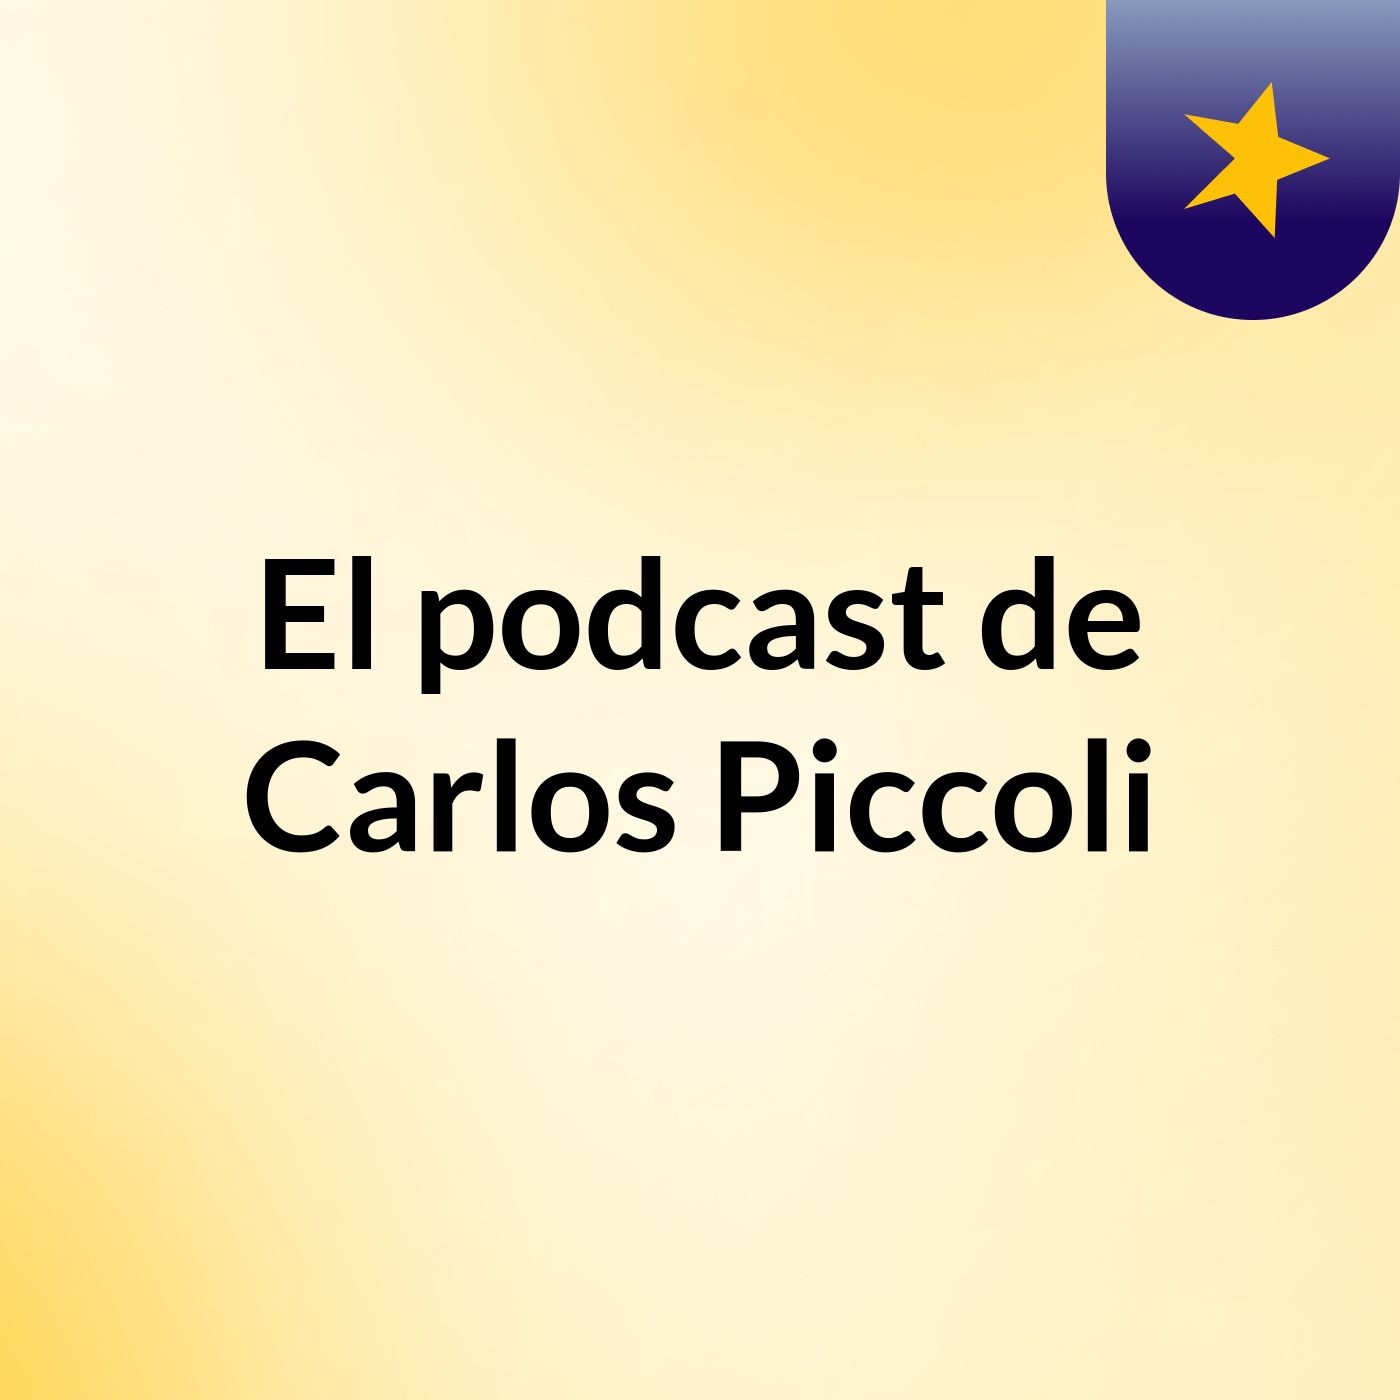 El podcast de Carlos Piccoli